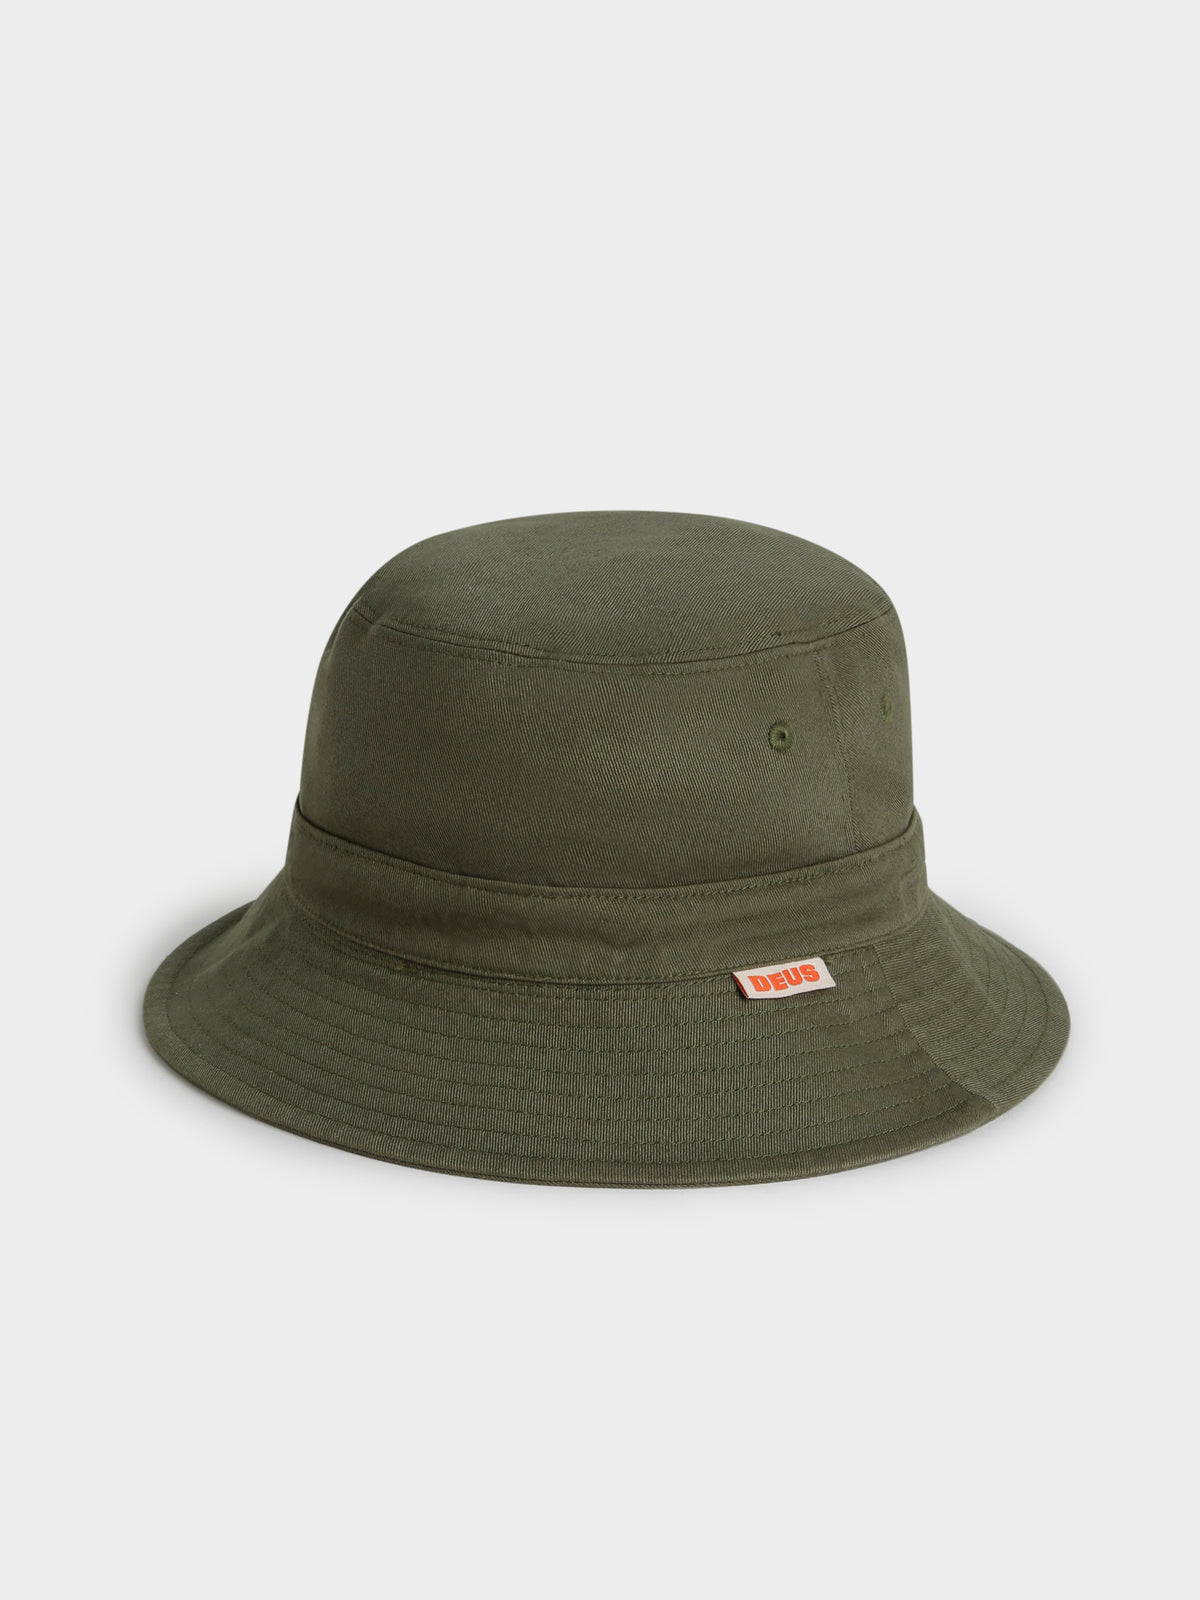 Gramicci x Deus Reversible Bucket Hat in Olive Green